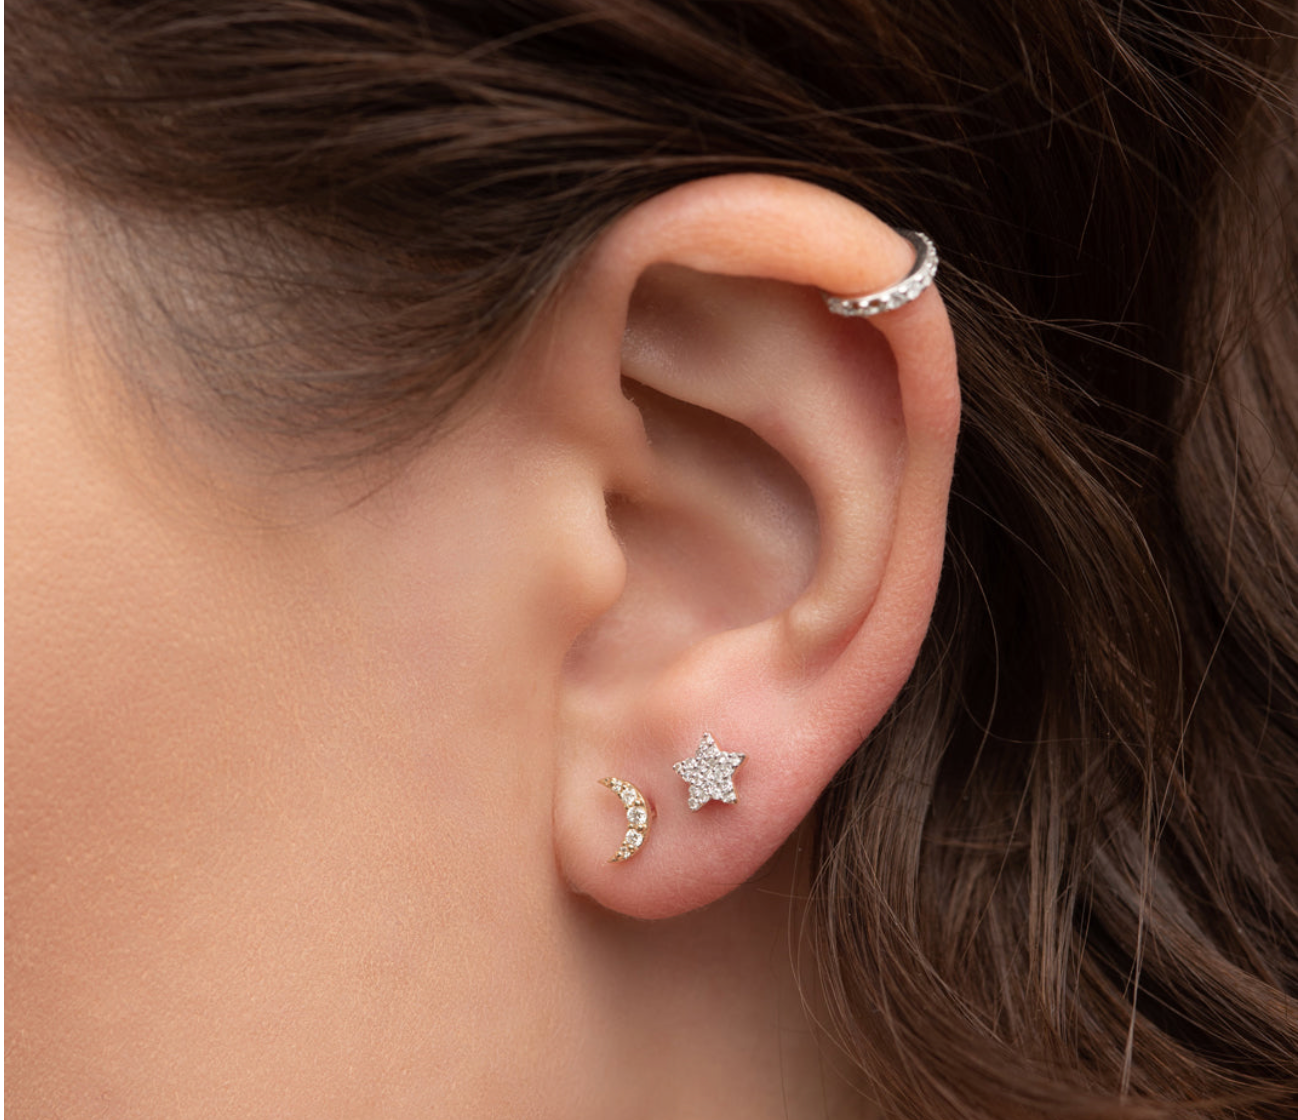 Diamond Pave Star Stud Earrings